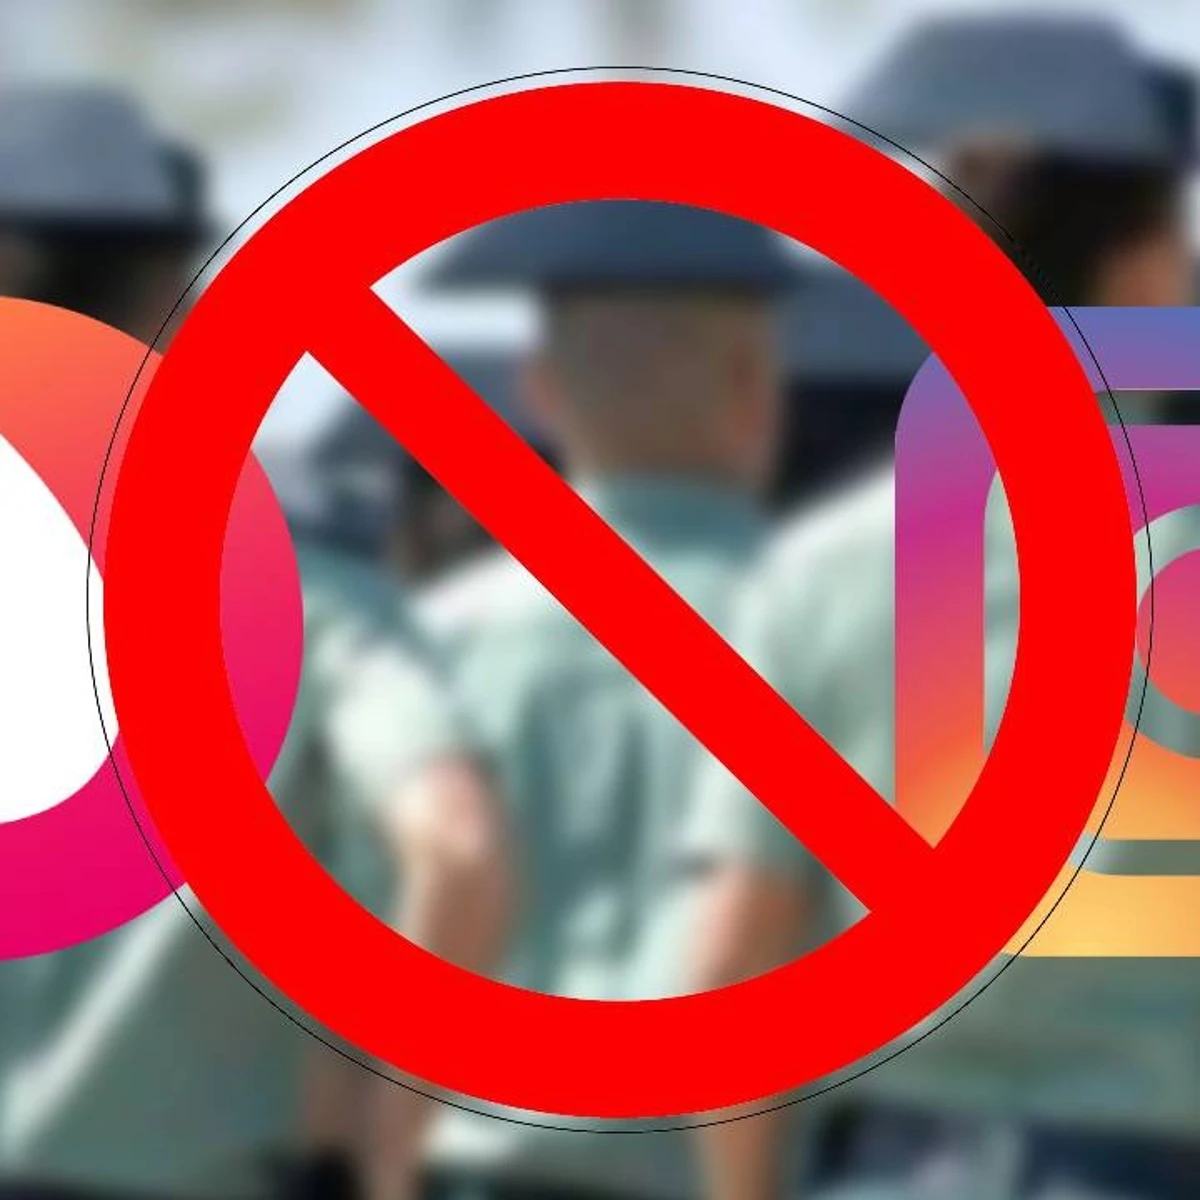 La Guardia Civil anuncia en Instagram el fin de los triángulos